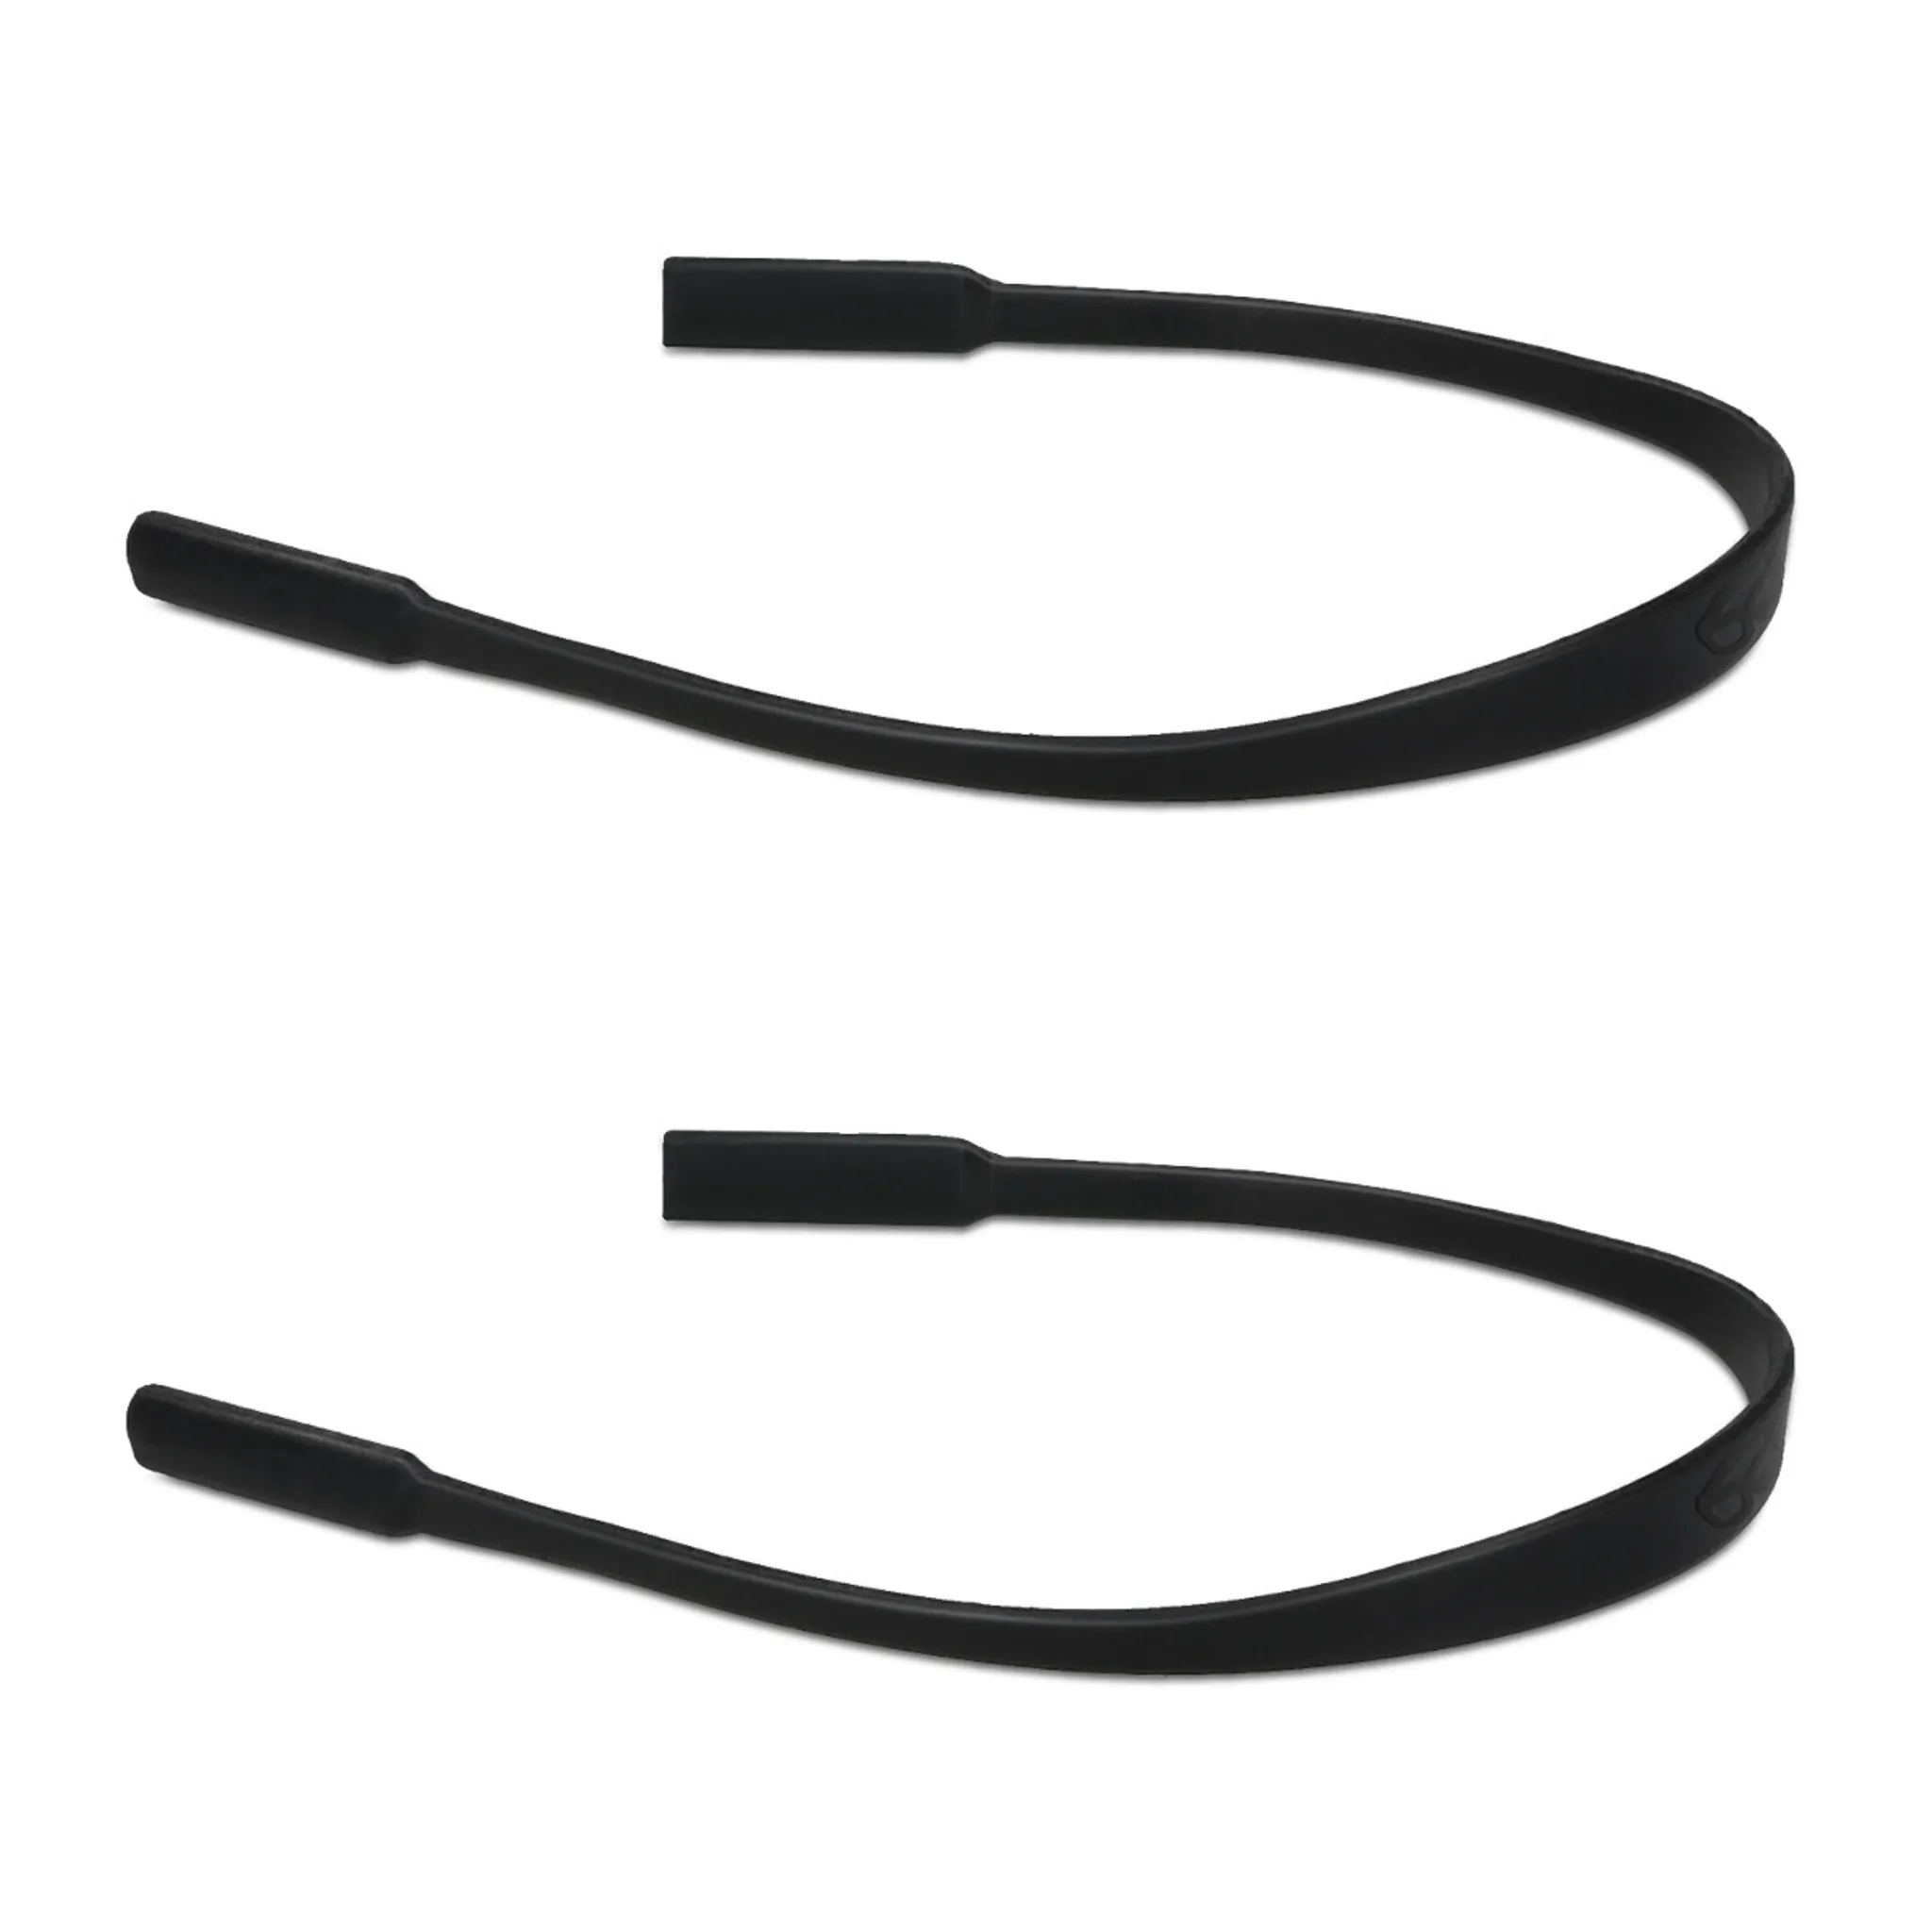 kwmobile Antirutsch Halterung und Brillenband für Brillenbügel Set - 4x L  Silikon Ohrbügel Haken und 2x Band für Brille Schwarz